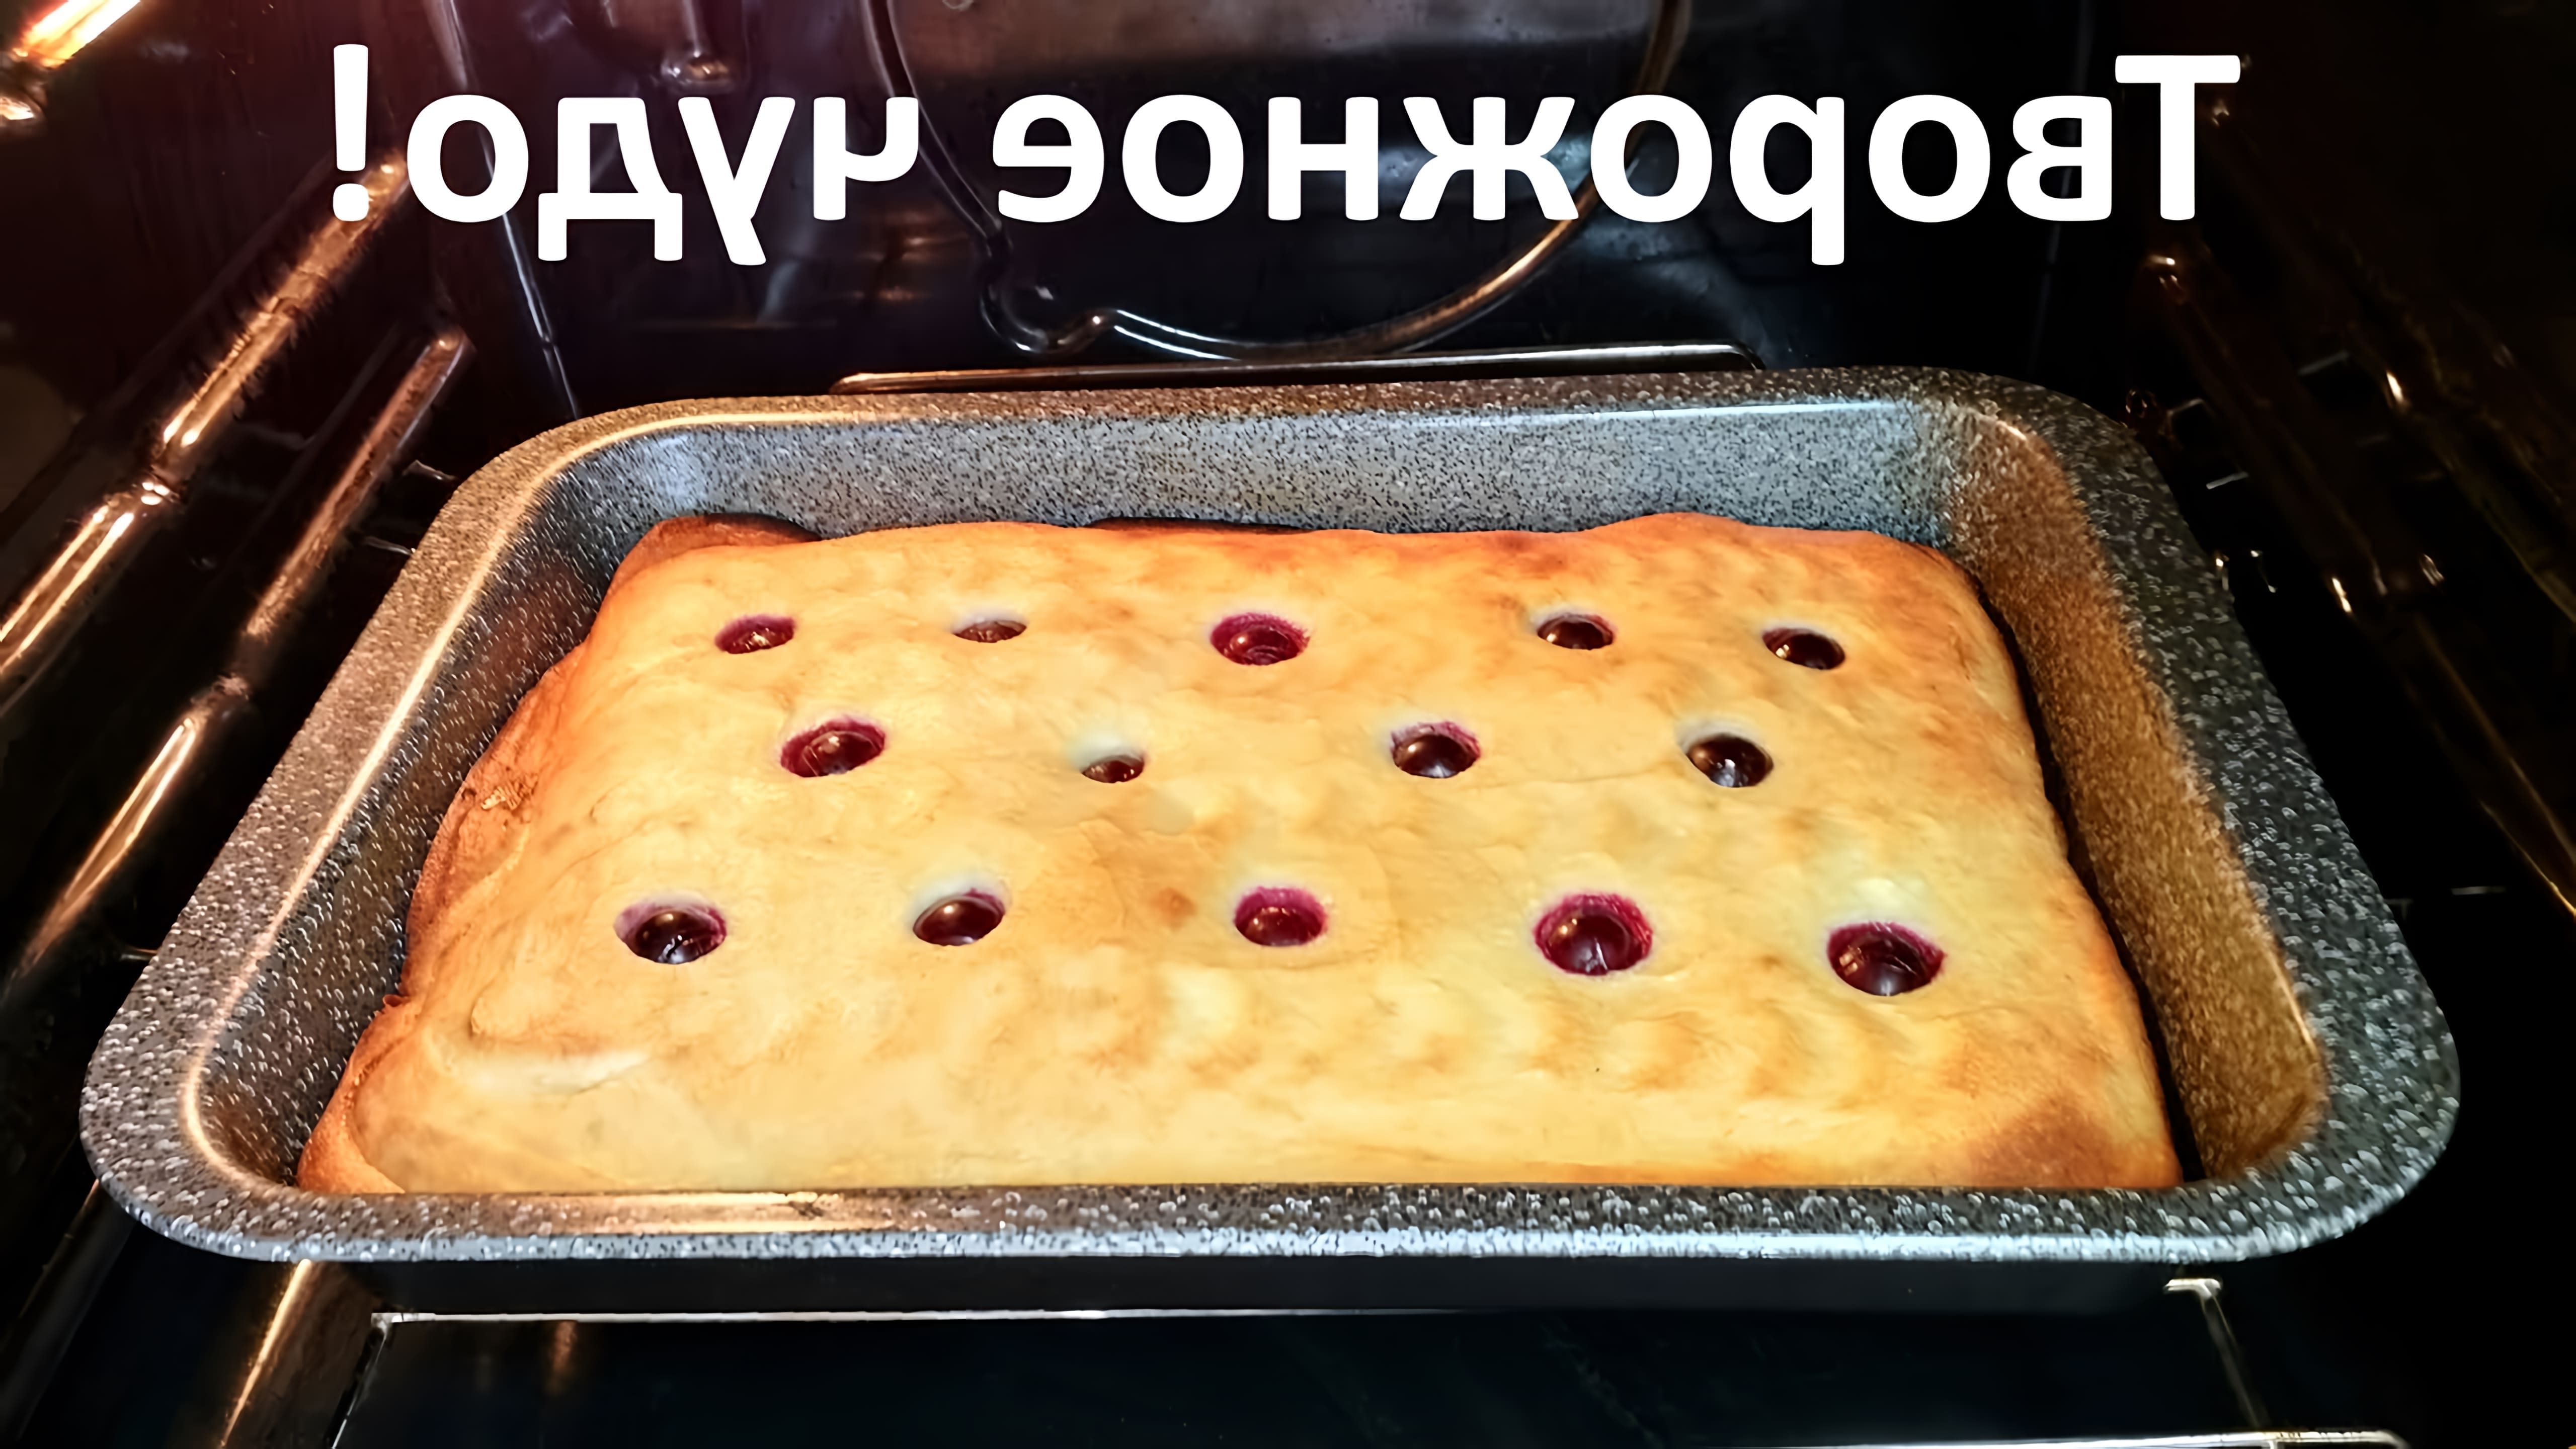 В этом видео-ролике будет представлен рецепт нежного и пышного пирога с творогом, приготовленного в духовке